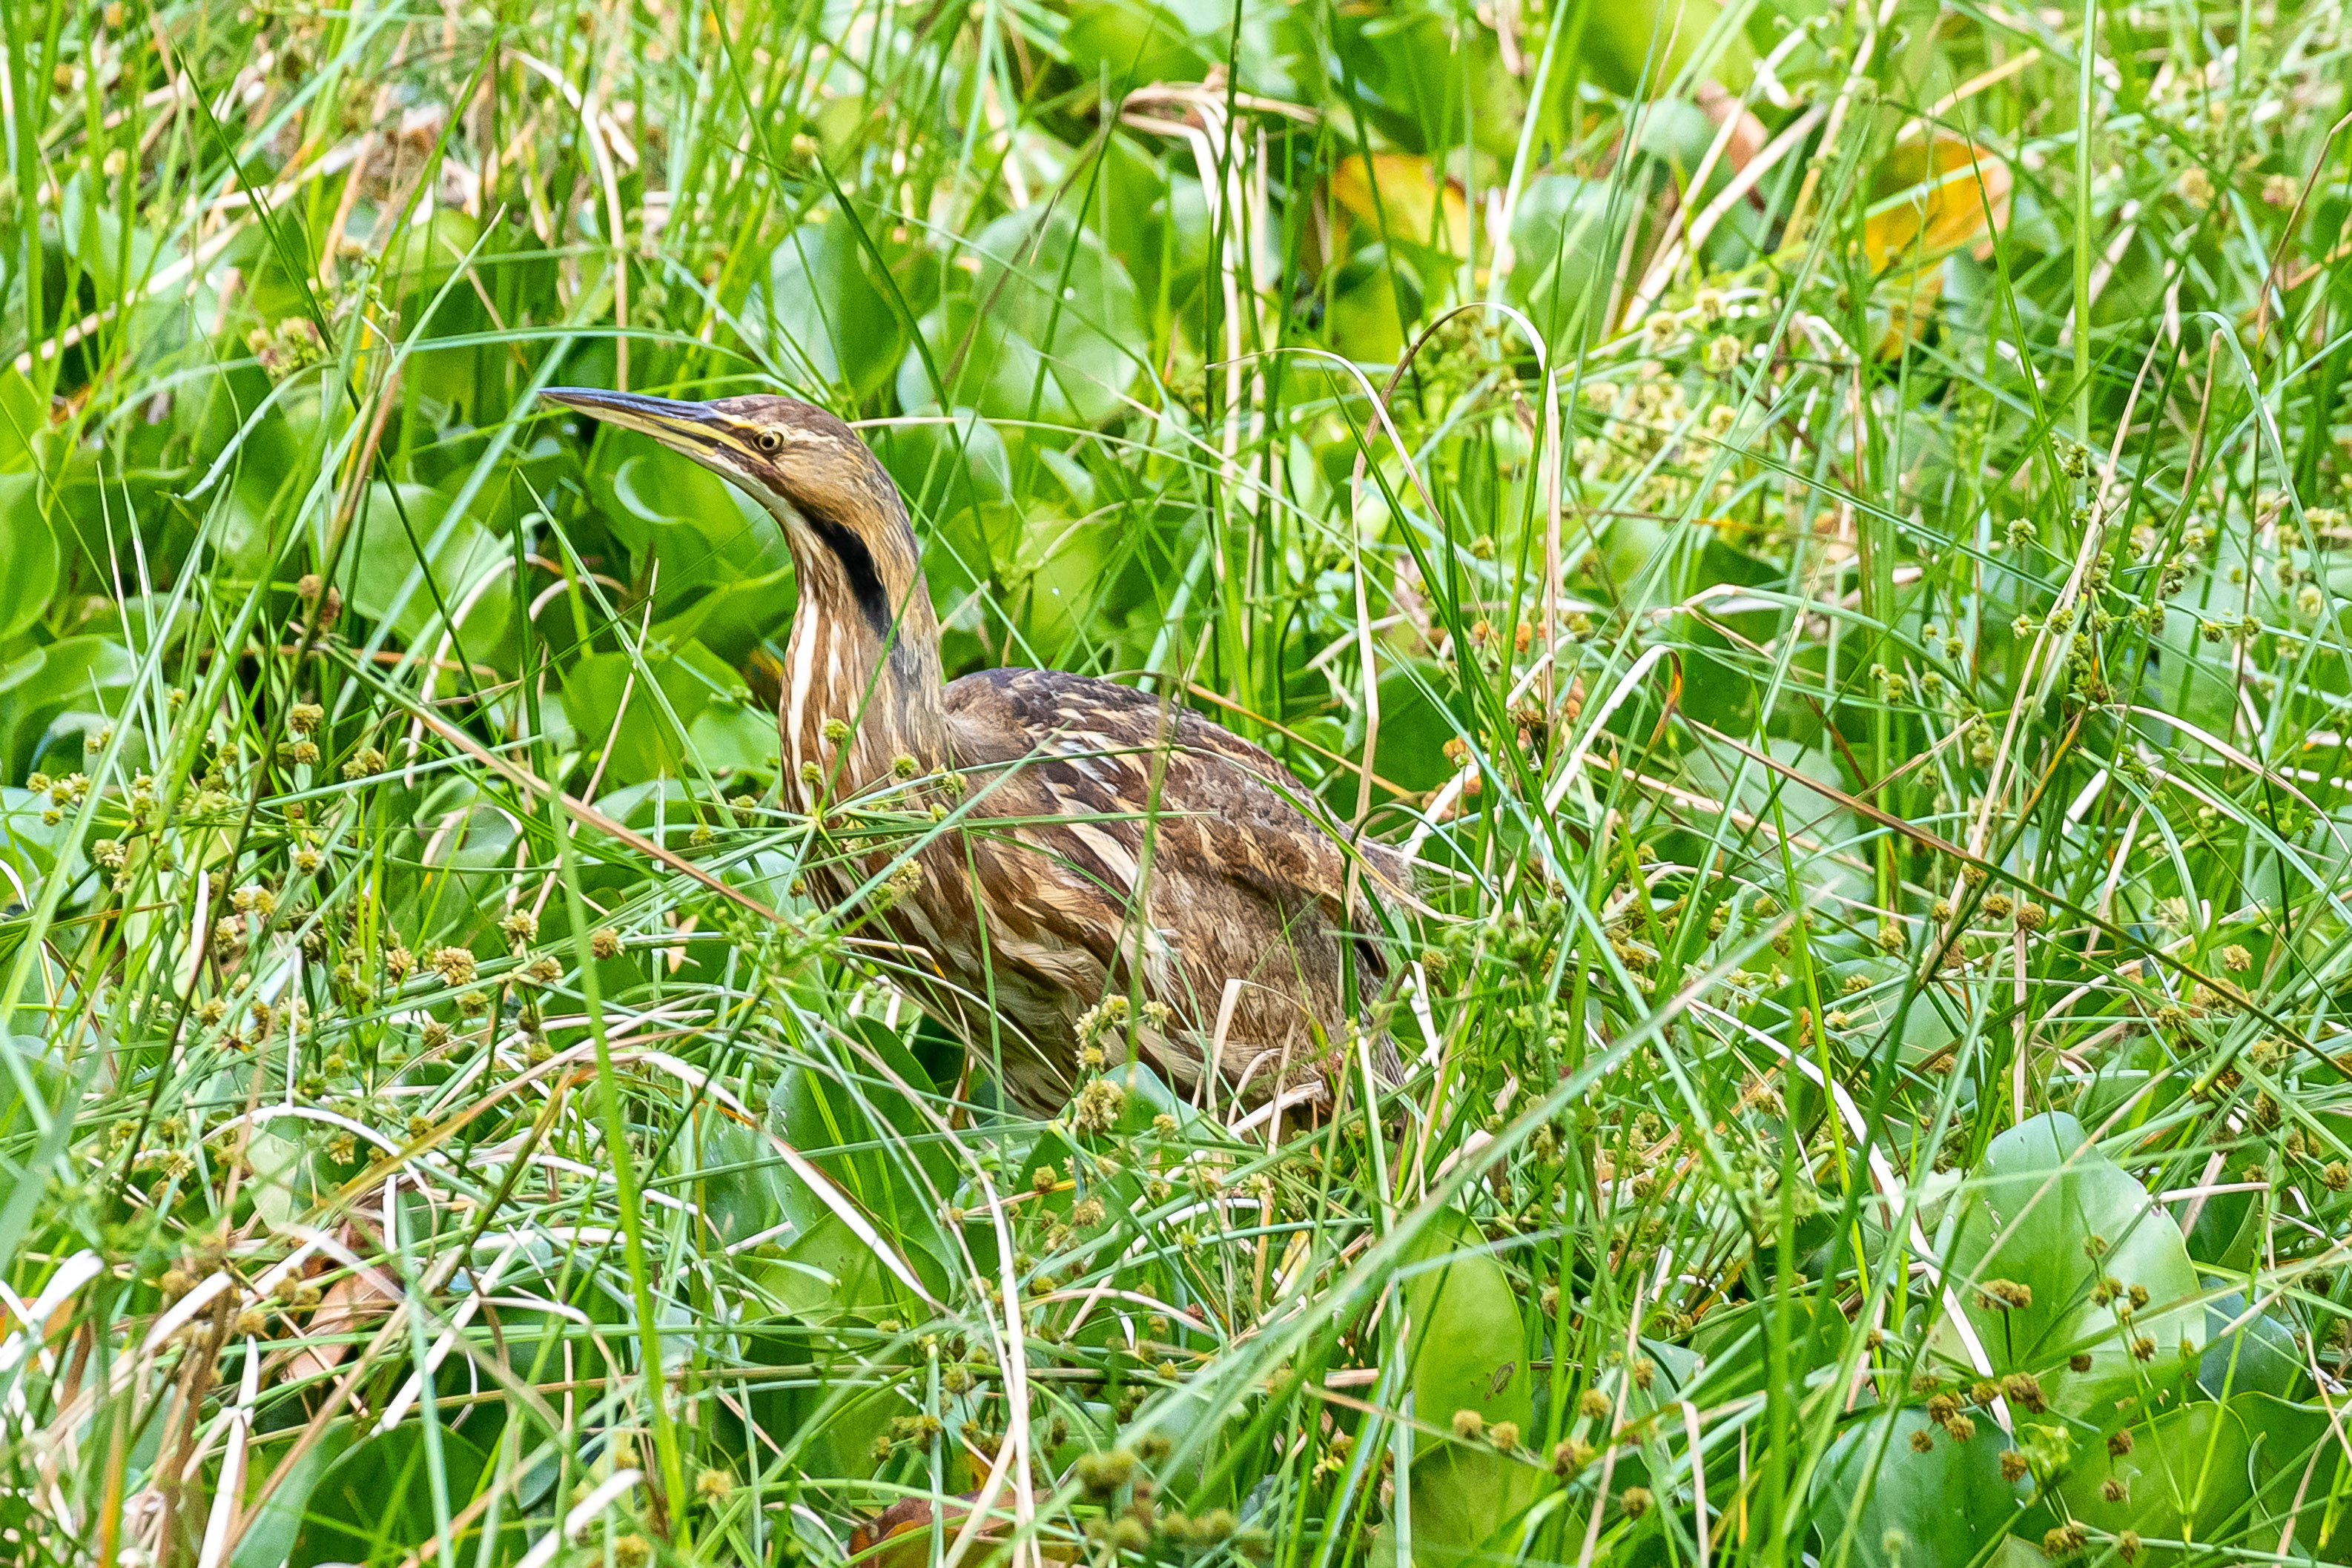 A brown bird in green grass